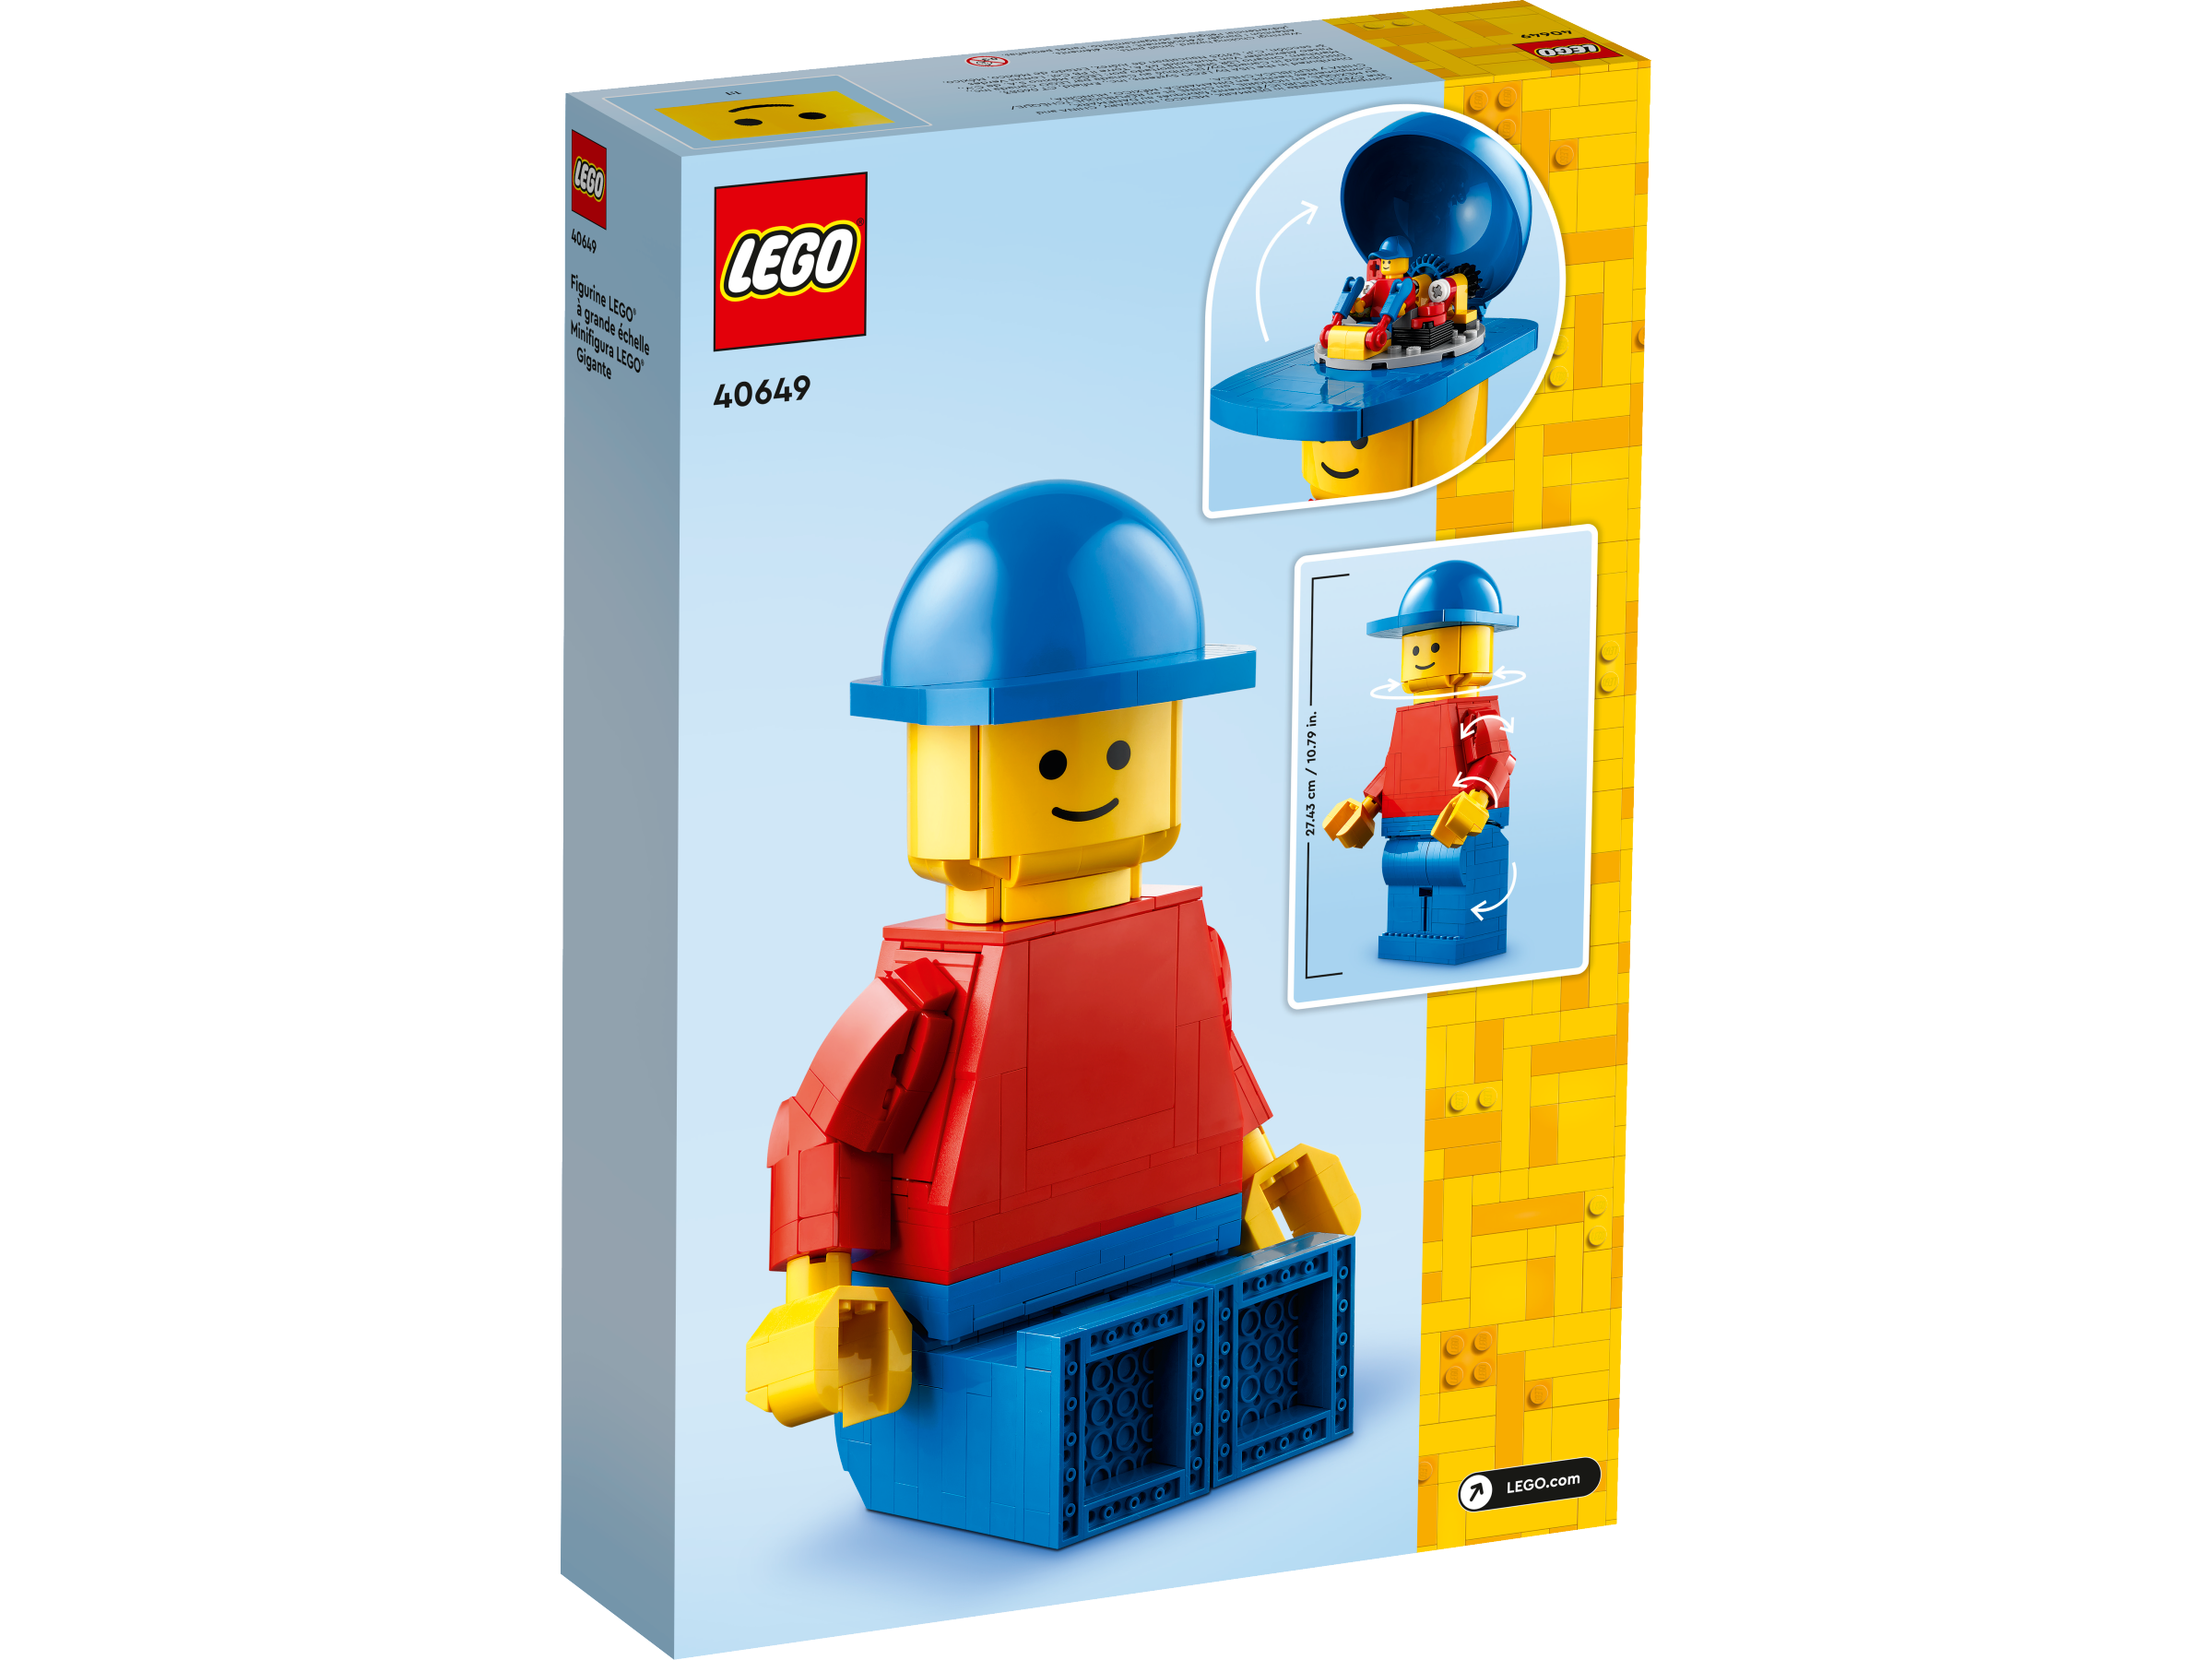 Up-Scaled LEGO® Minifigure 40649, Minifigures